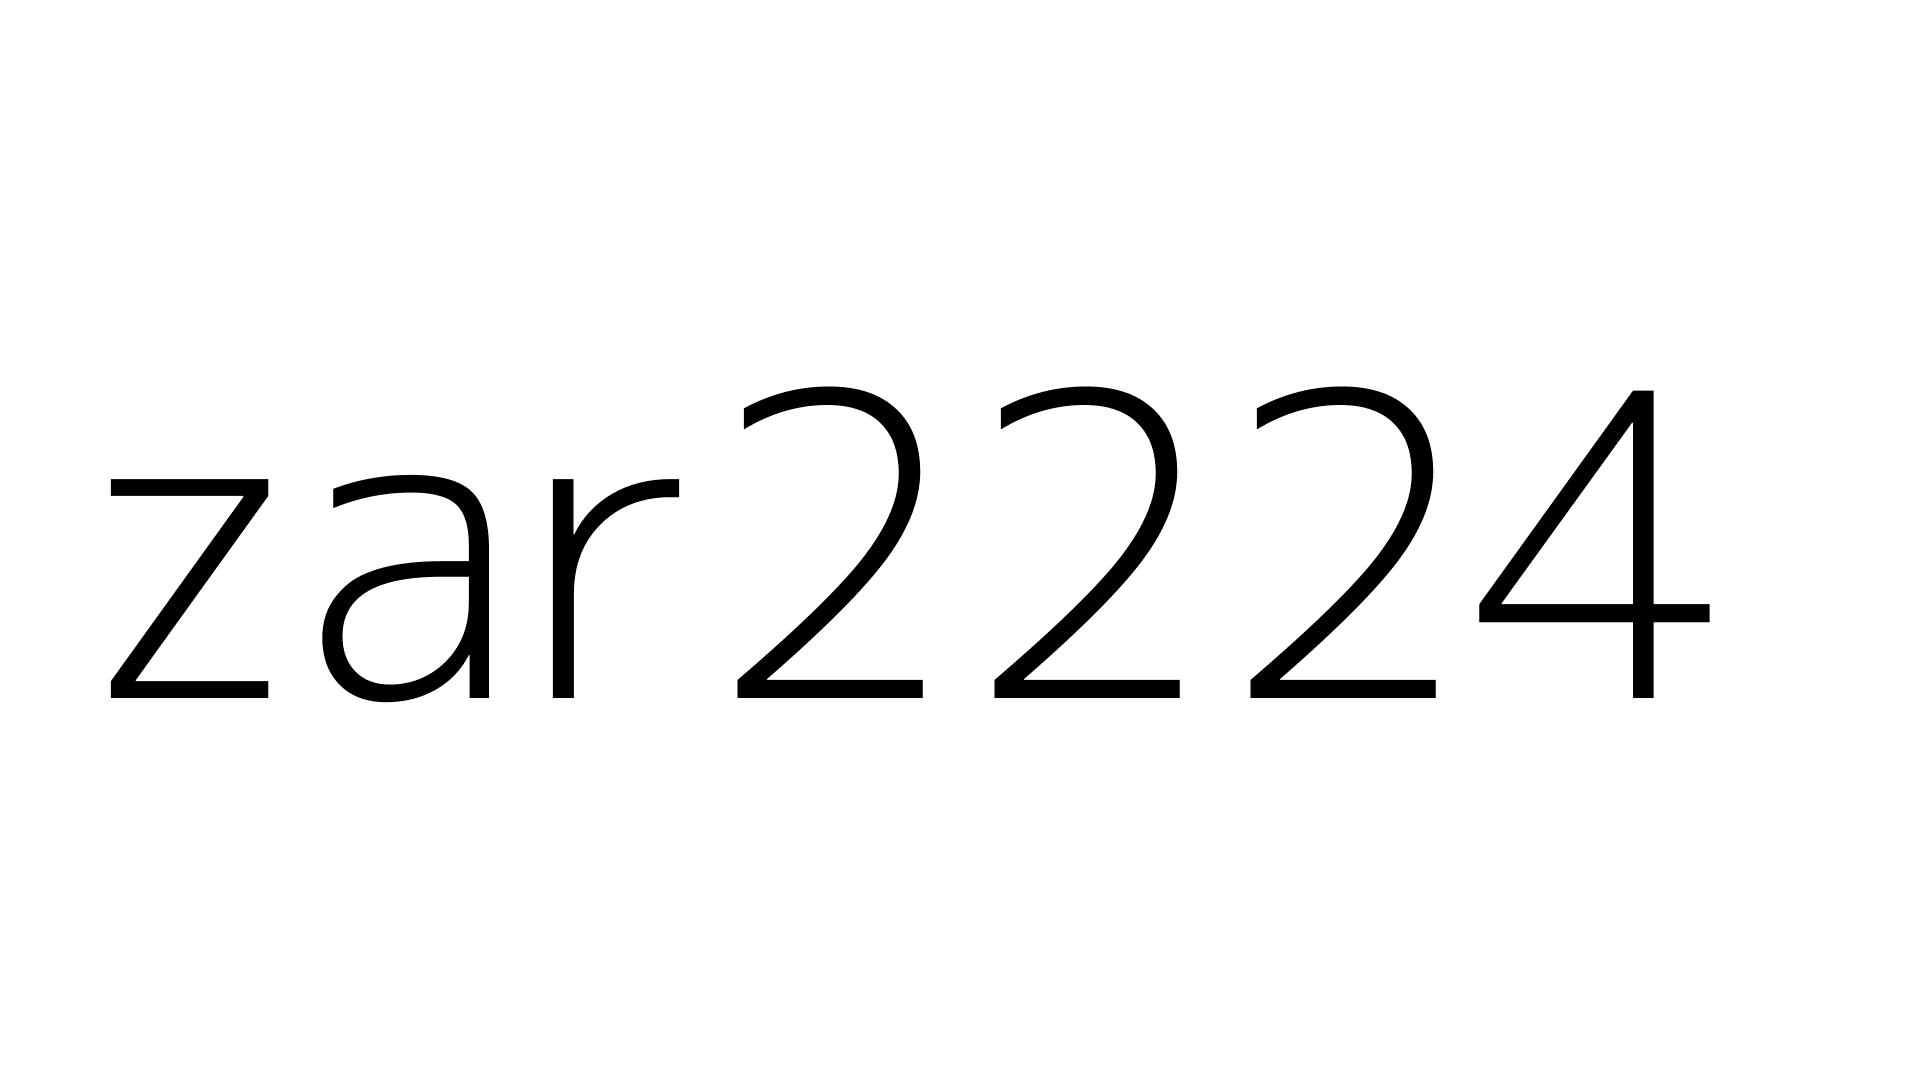 zar2224